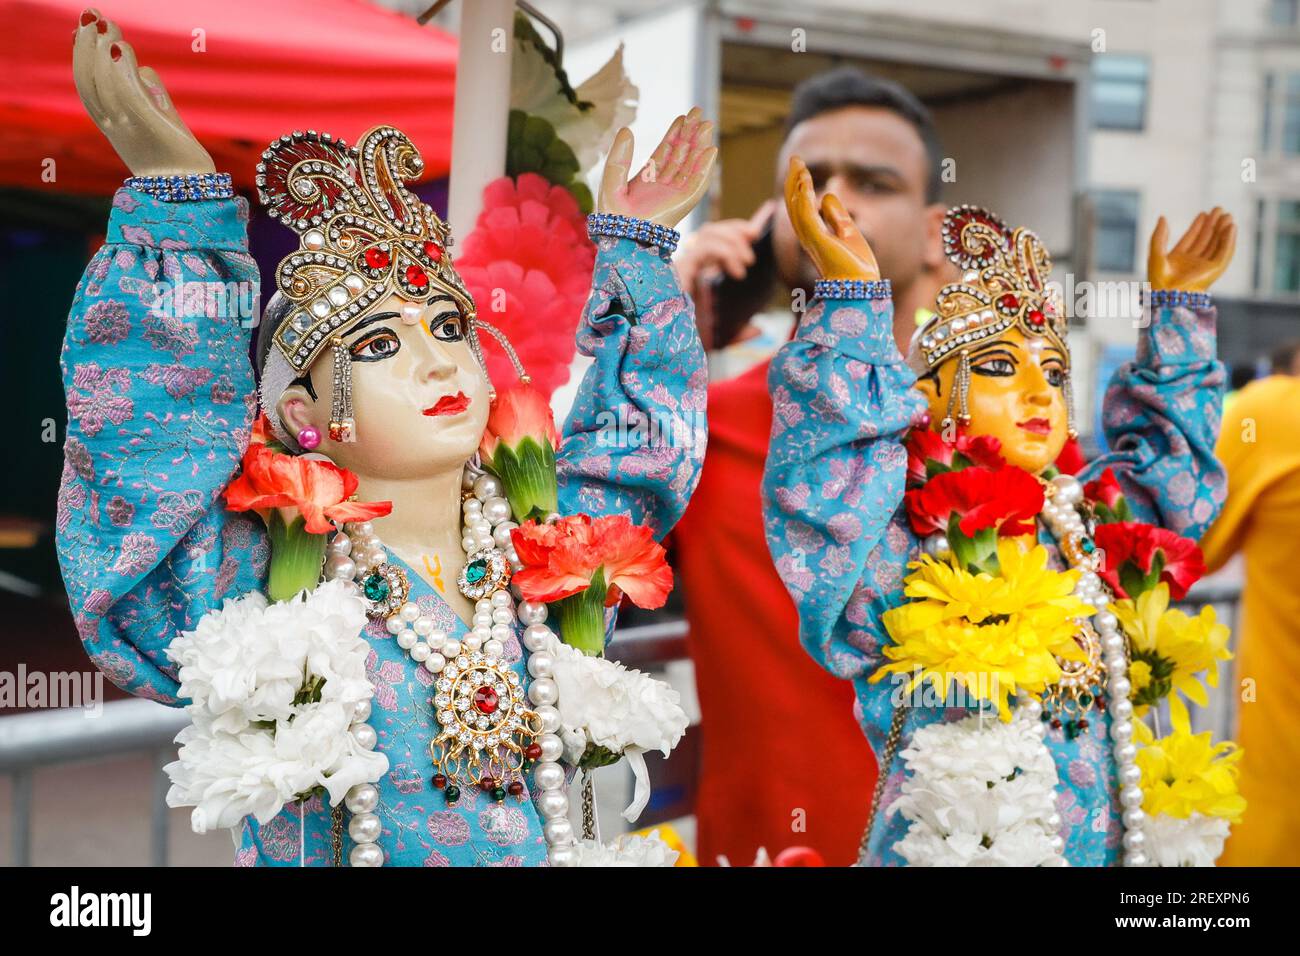 Londres, Royaume-Uni. 30 juillet 2023. Représentations des divinités sur un chariot avec des décorations colorées. Londres Rathayatra (qui signifie festival de char) est célébré par les dévots de Krishna. La célébration, qui a une longue tradition de plusieurs centaines d'années en Inde, commémore chaque année le voyage des divinités Lagannatha, Baladeva et Subhadra. Une procession voit d'abord des milliers de personnes se déplacer vers le centre de Londres, suivie par des spectacles, des festivités et de la nourriture sur Trafalgar Square. Crédit : Imageplotter/Alamy Live News Banque D'Images